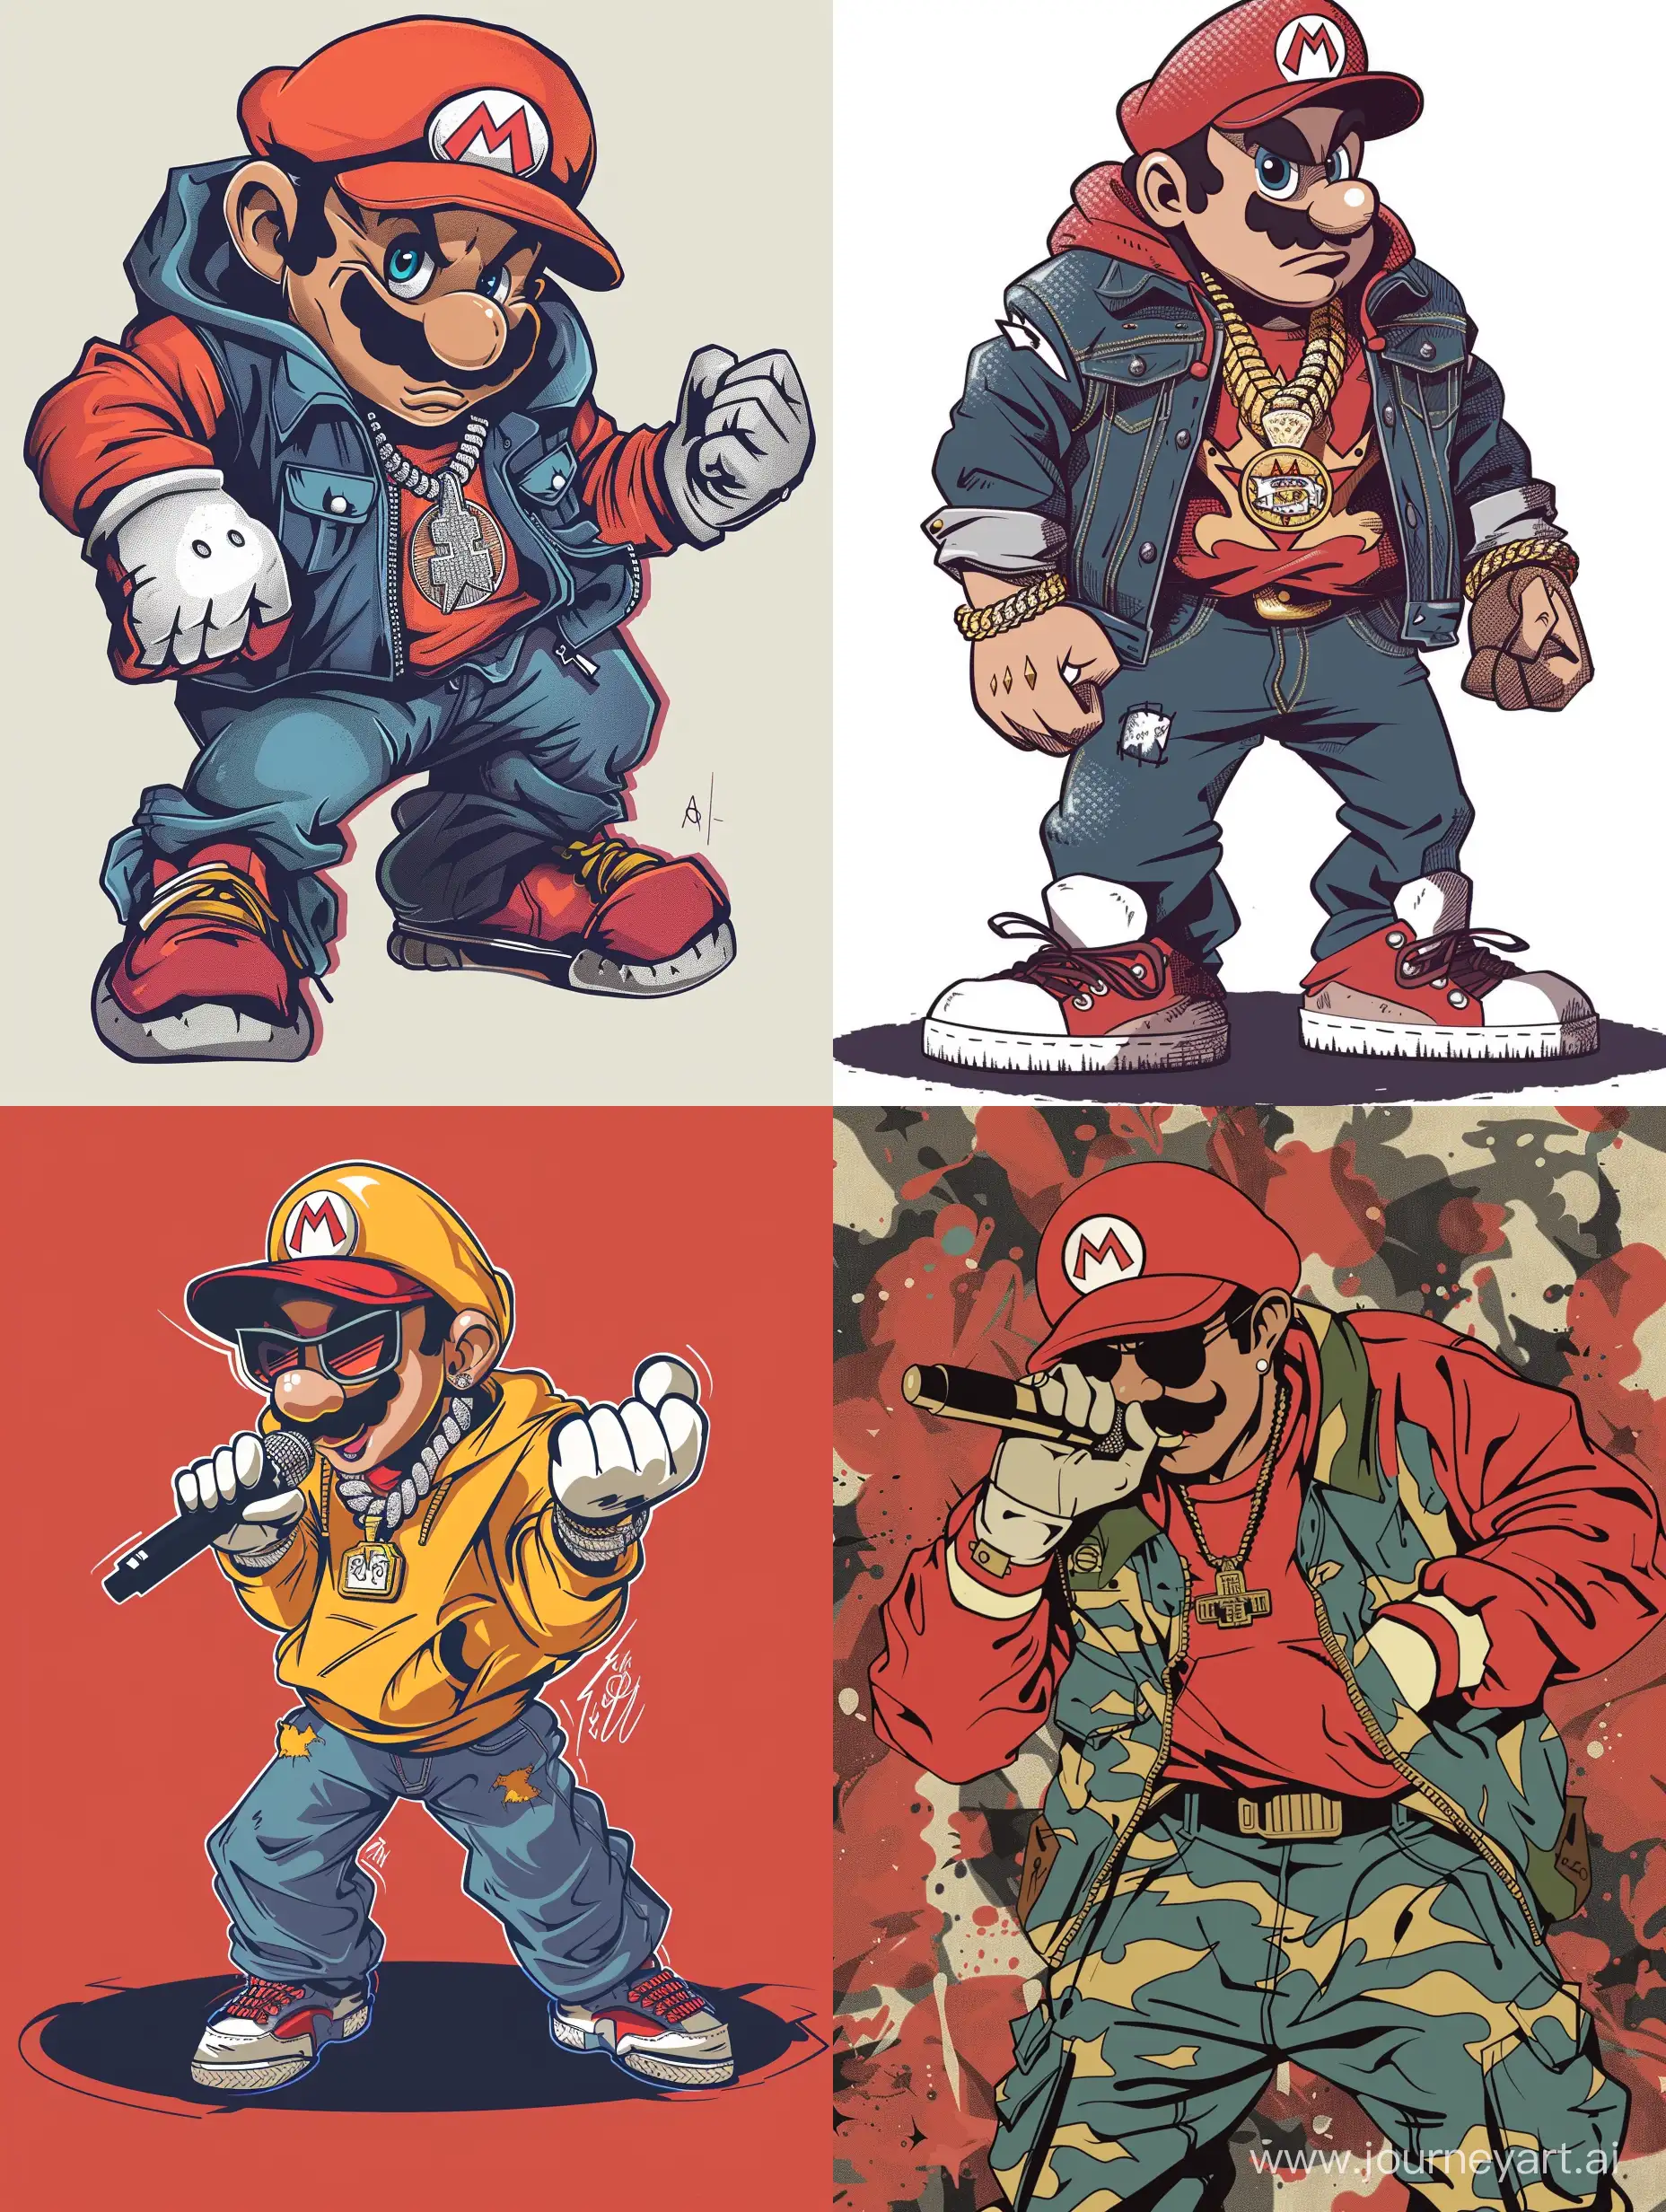 Mario the rapper